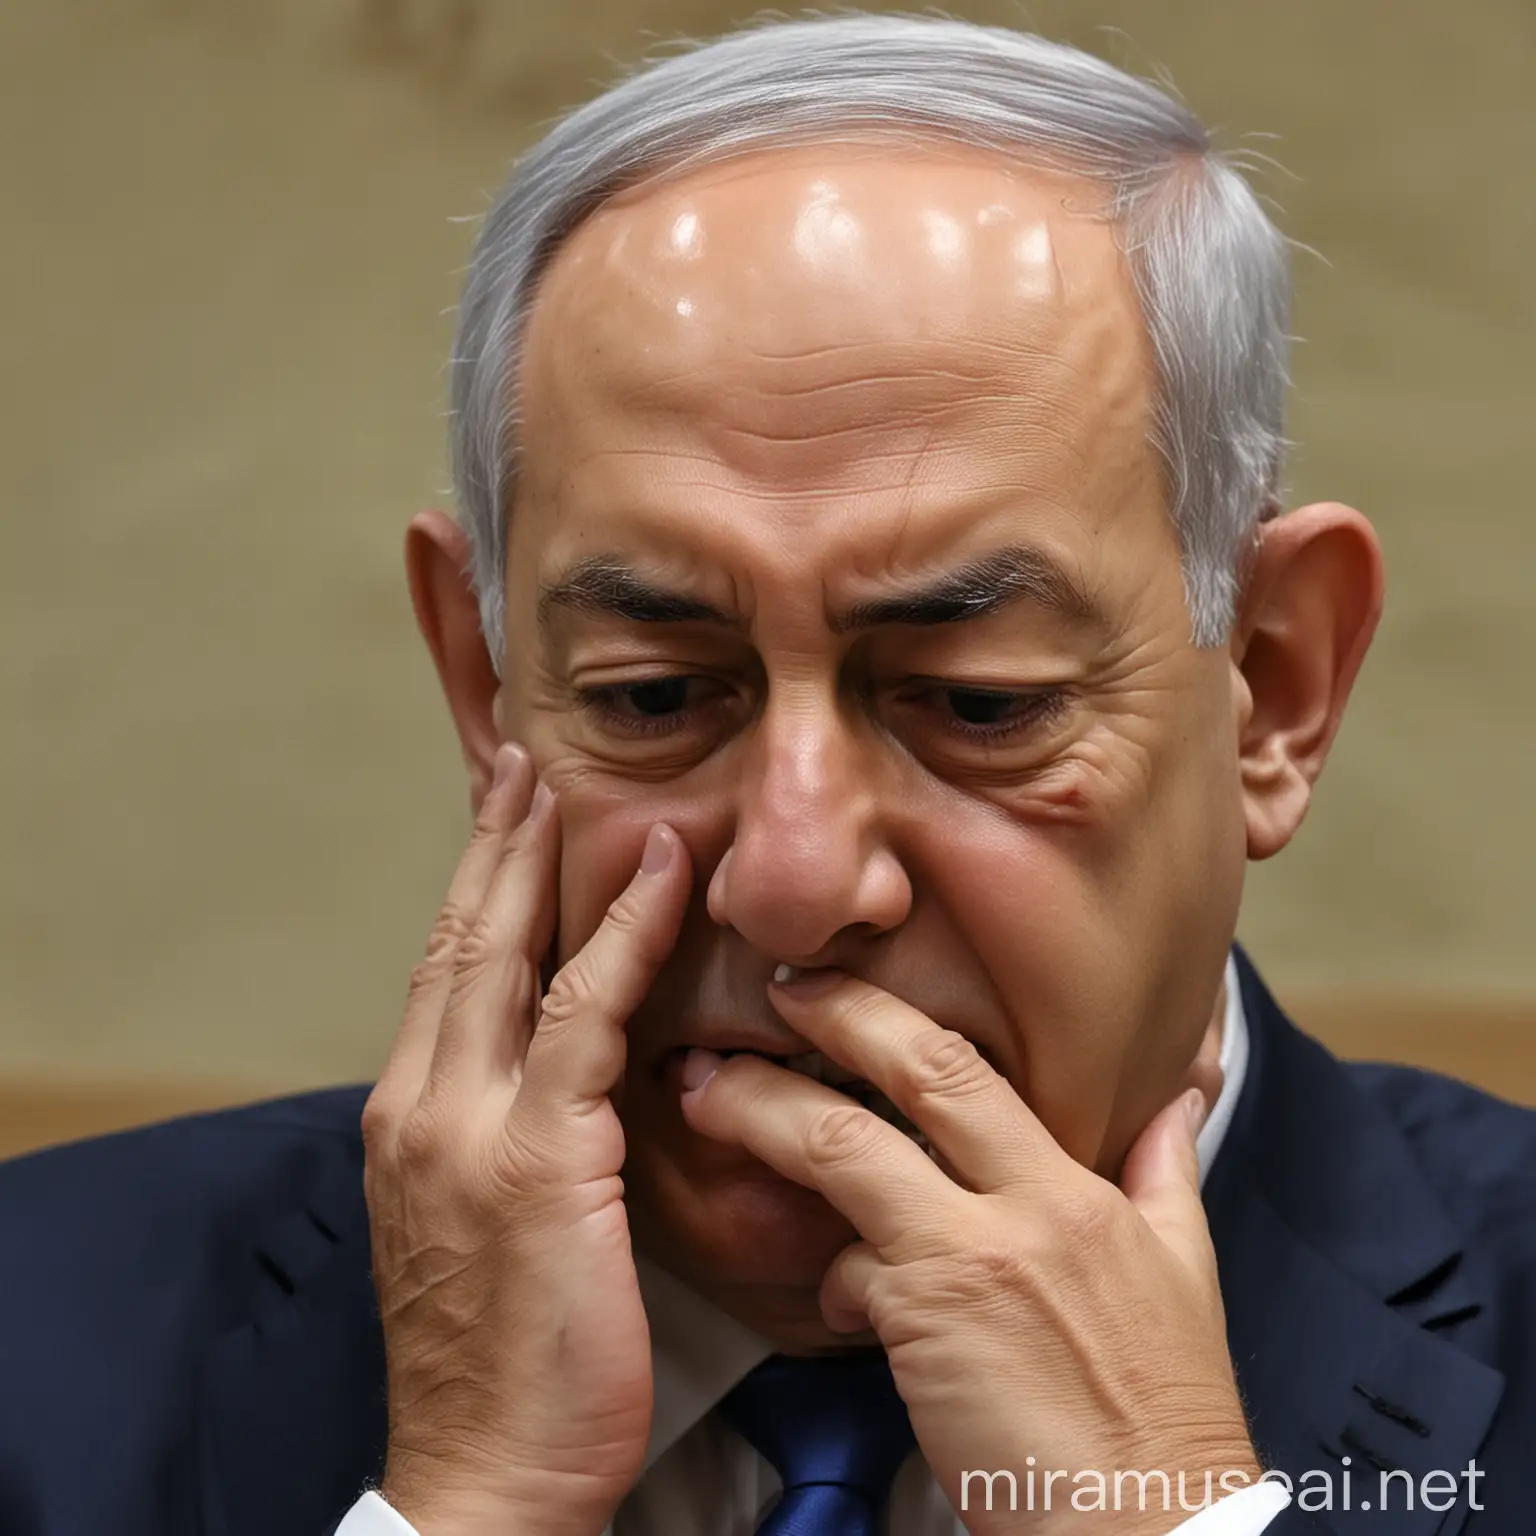 Netanyahu crying Badly After Iran Attack